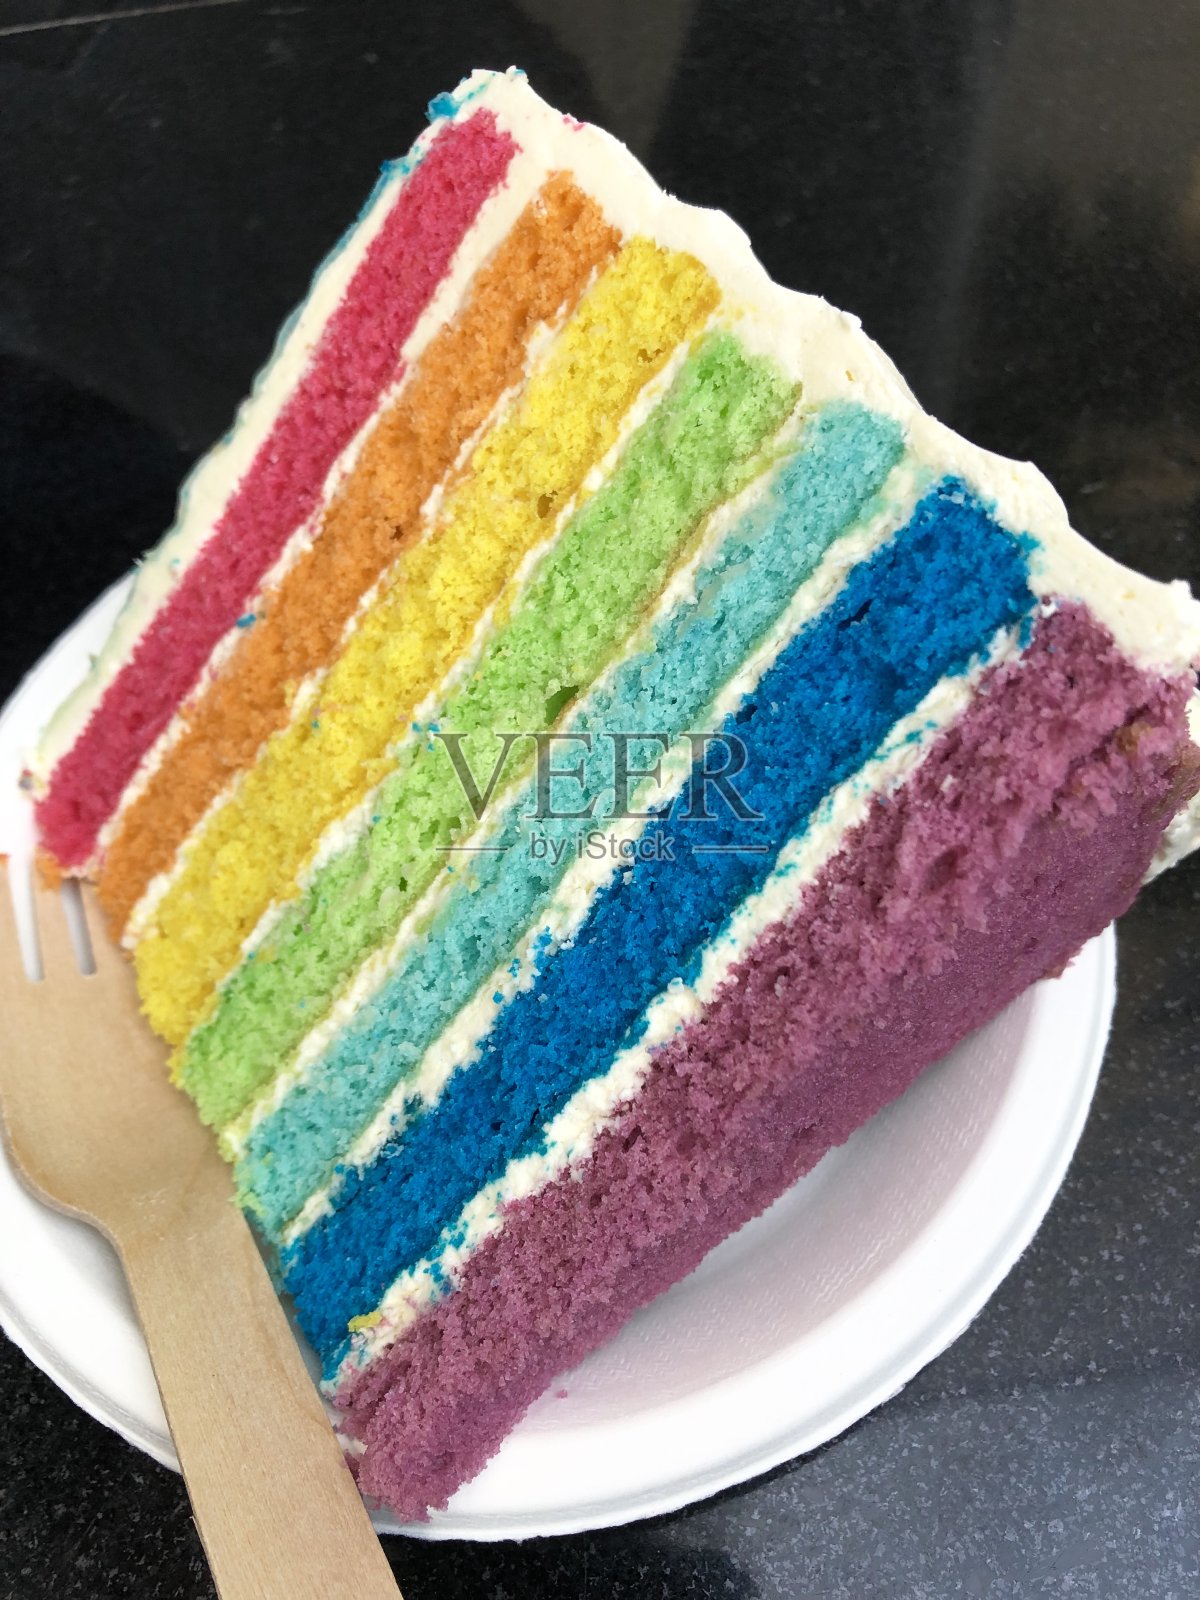 彩虹蛋糕的切片图像显示了多色海绵层与奶油糖霜的照片照片摄影图片